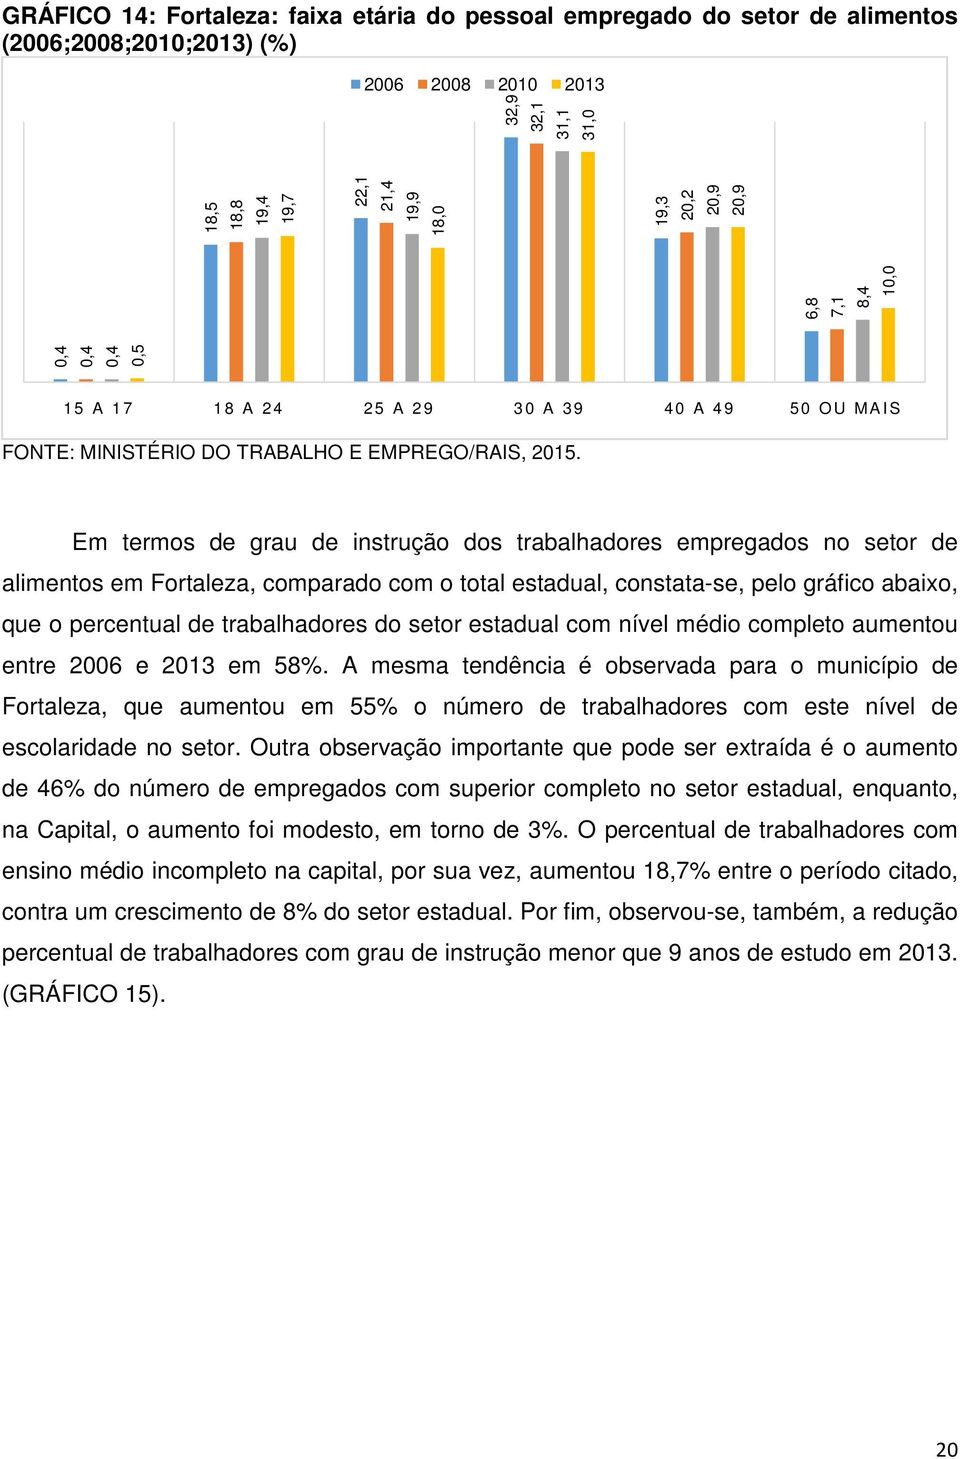 Fortaleza, comparado com o total estadual, constata-se, pelo gráfico abaixo, que o percentual de trabalhadores do setor estadual com nível médio completo aumentou entre 2006 e 2013 em 58%.